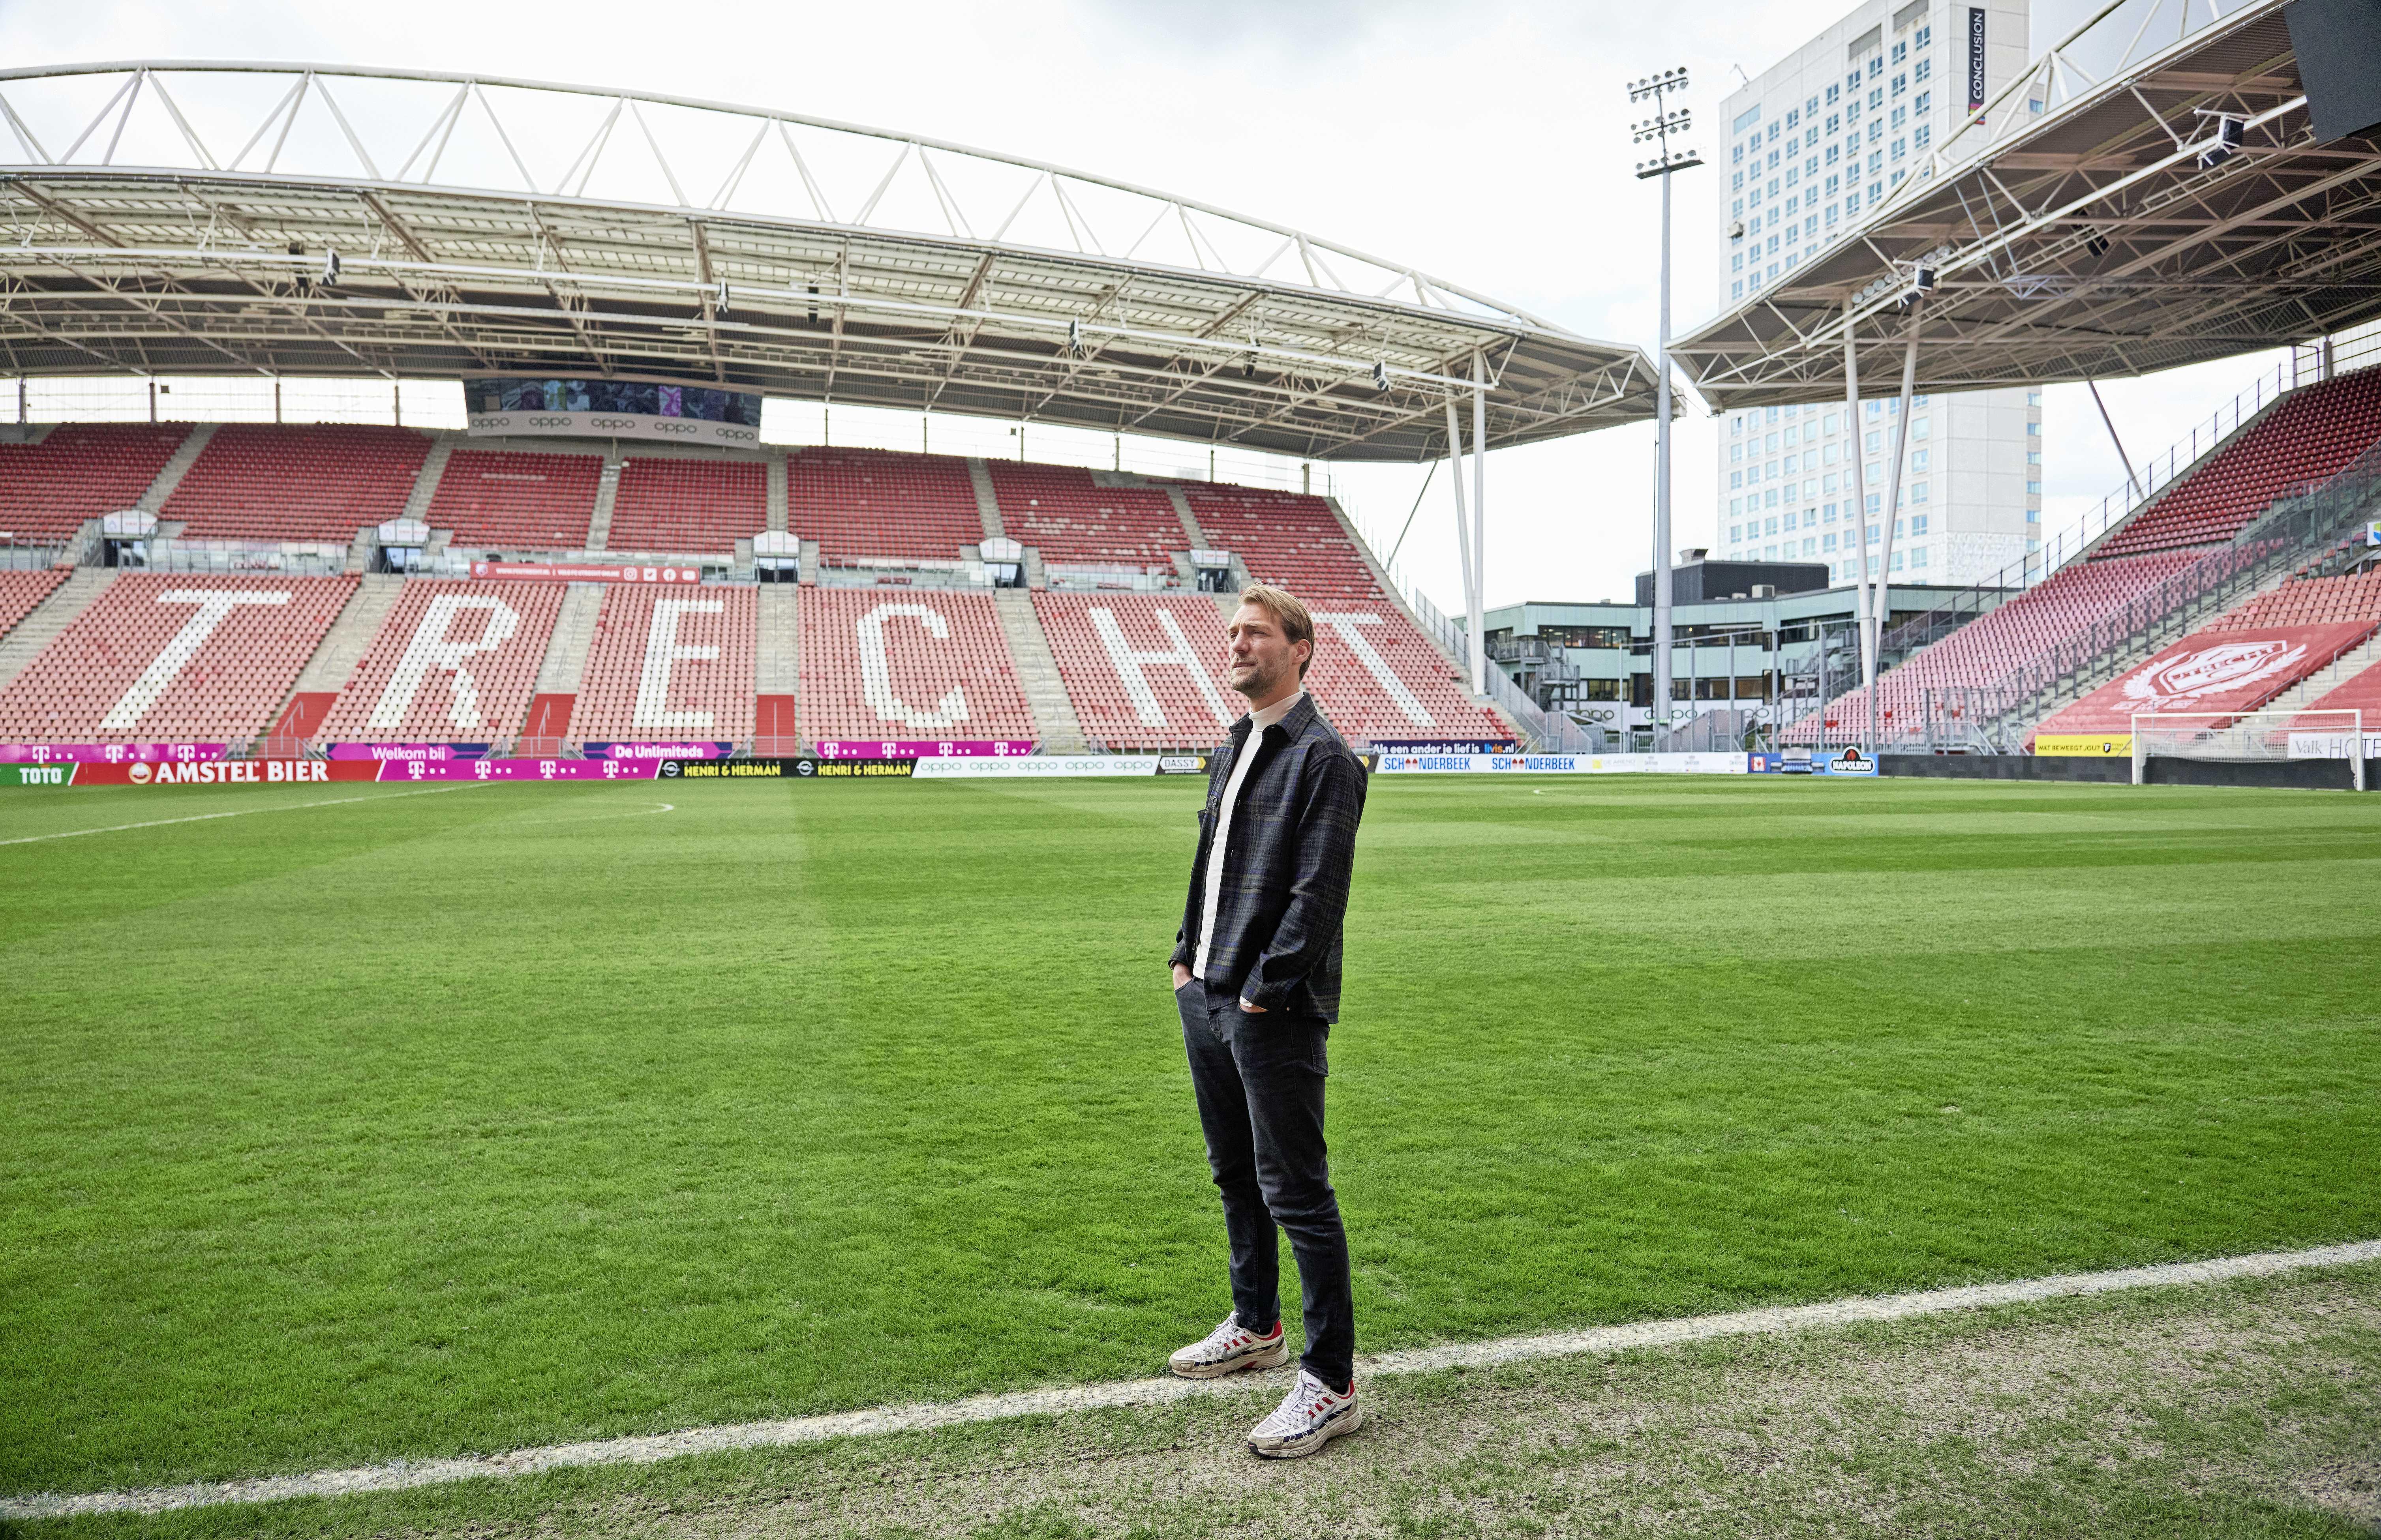 Paniekaanvallen houden Van der Wiel en Kishna van het veld: 'Ik kon er niet  mee leven', Nederlands voetbal